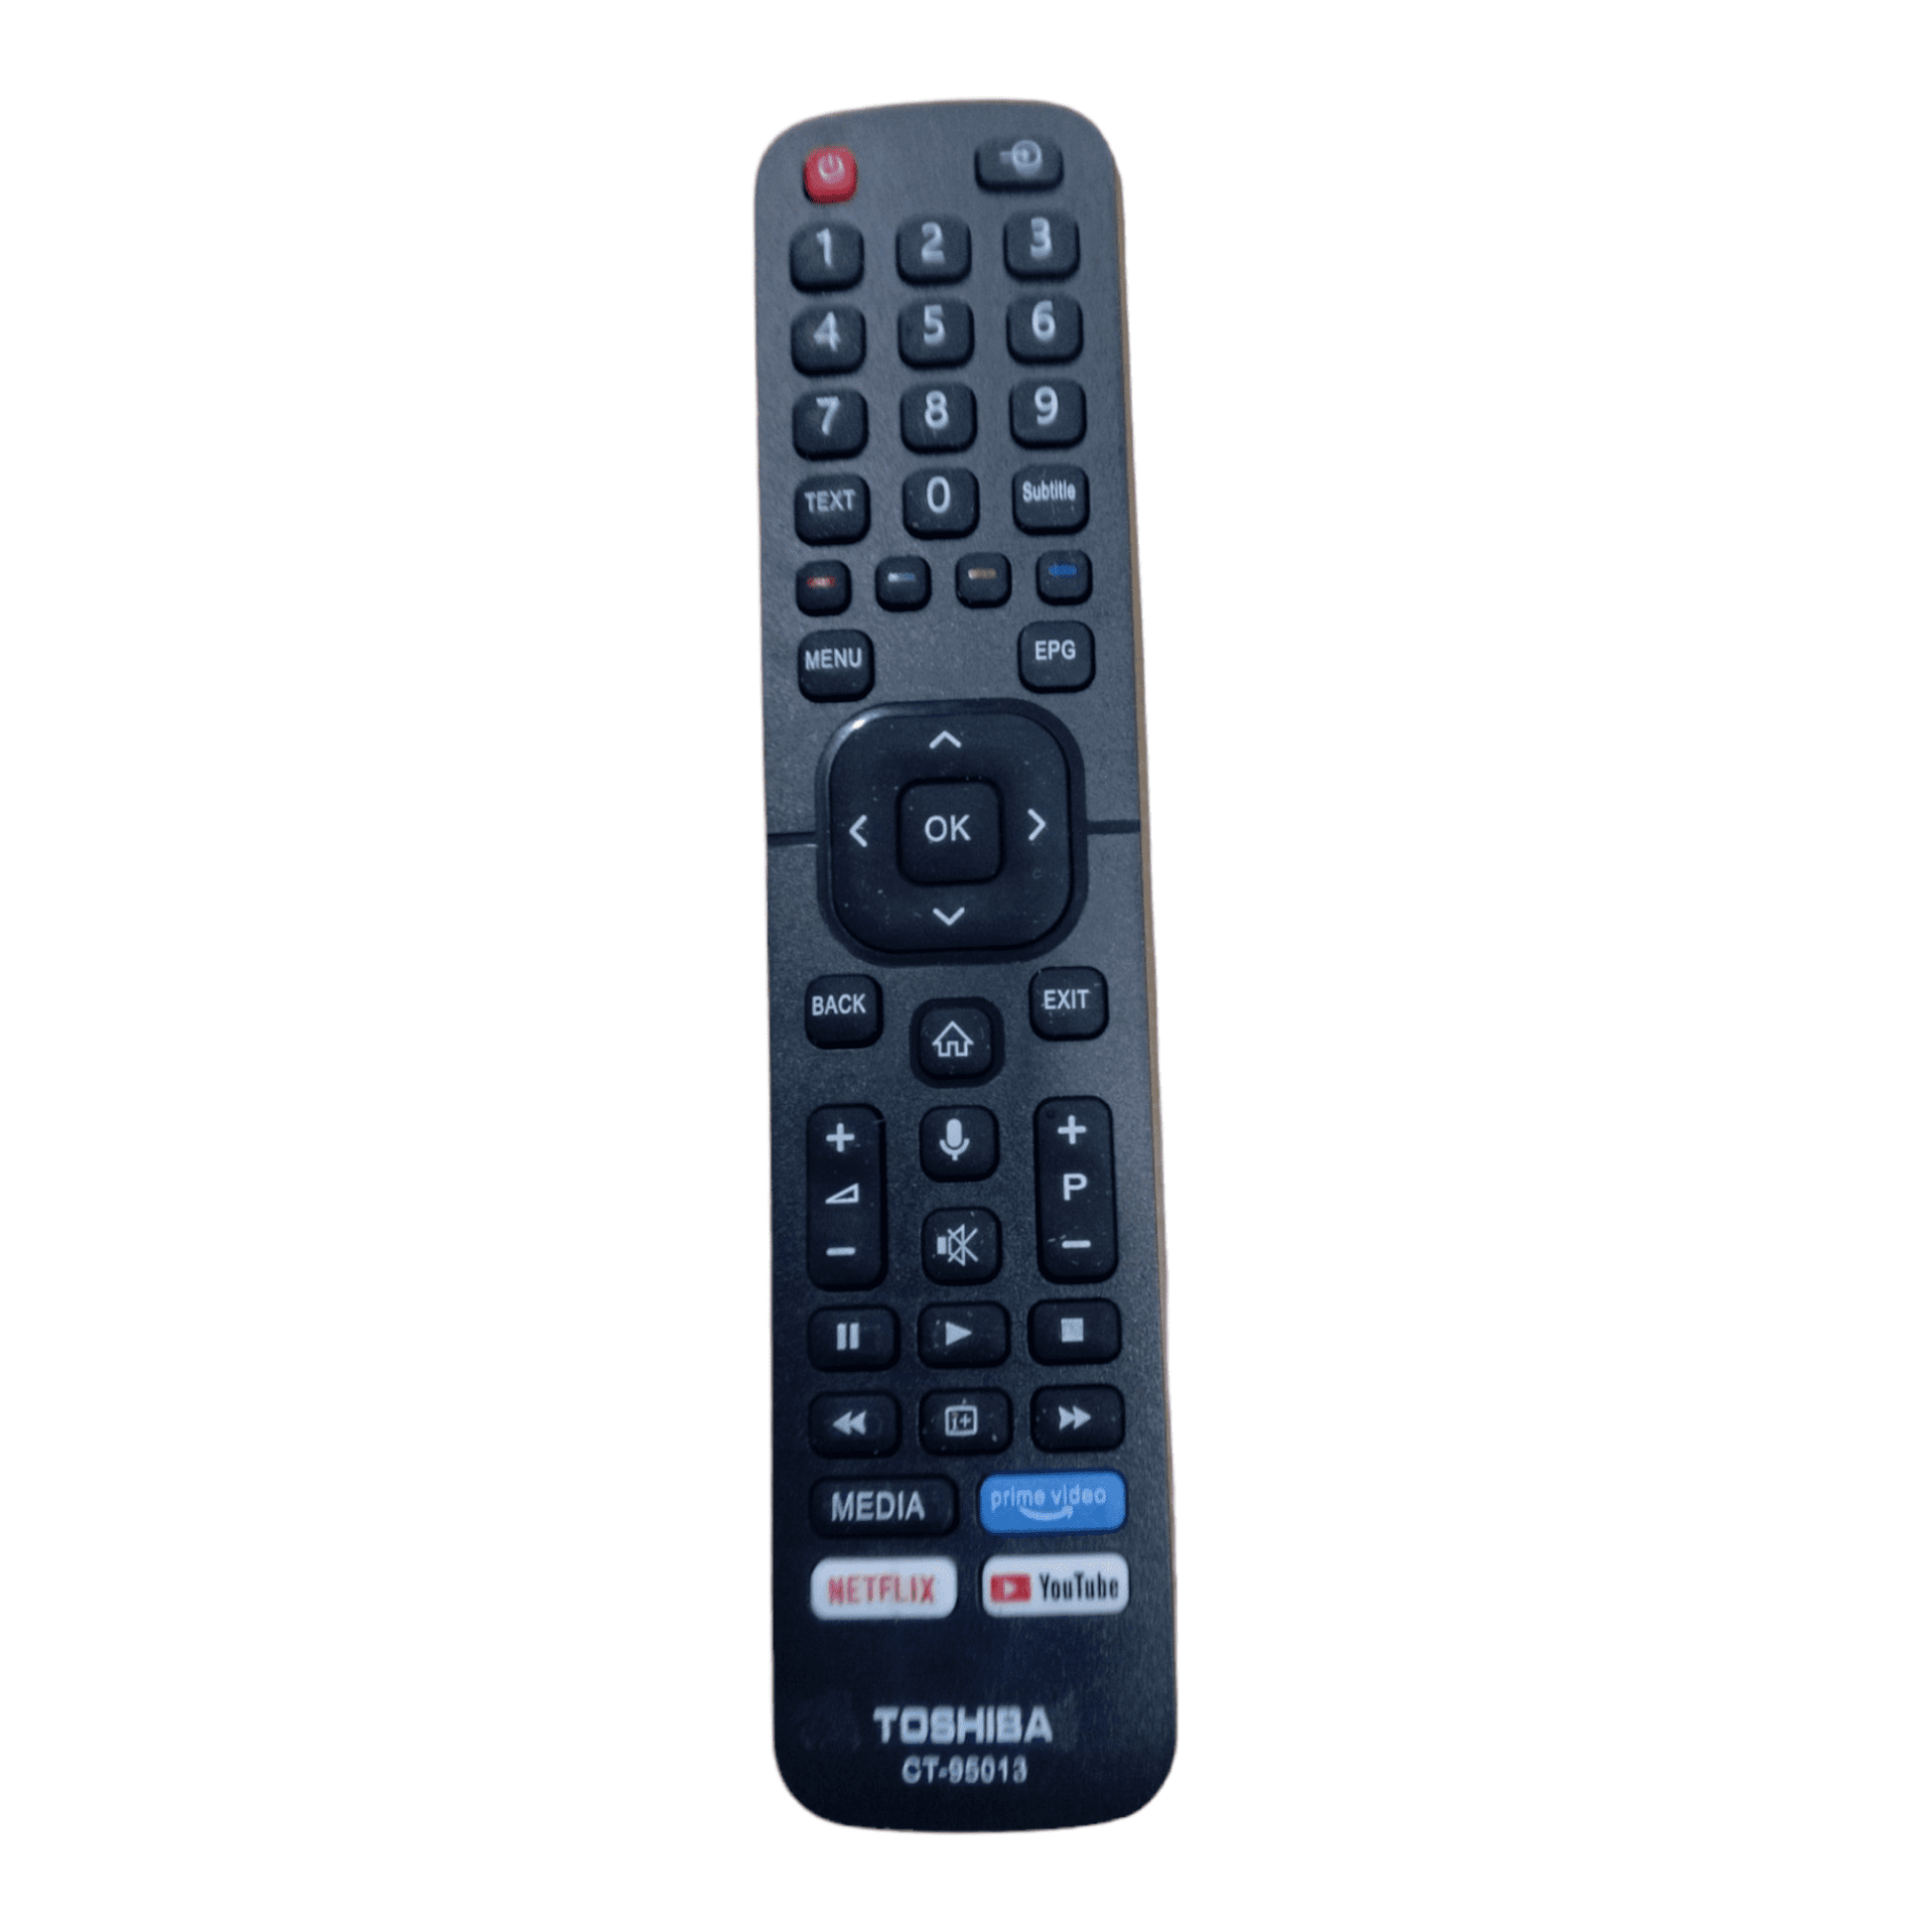 Toshiba Smart TV remote control Youtube, Netflix,prime video - Faritha